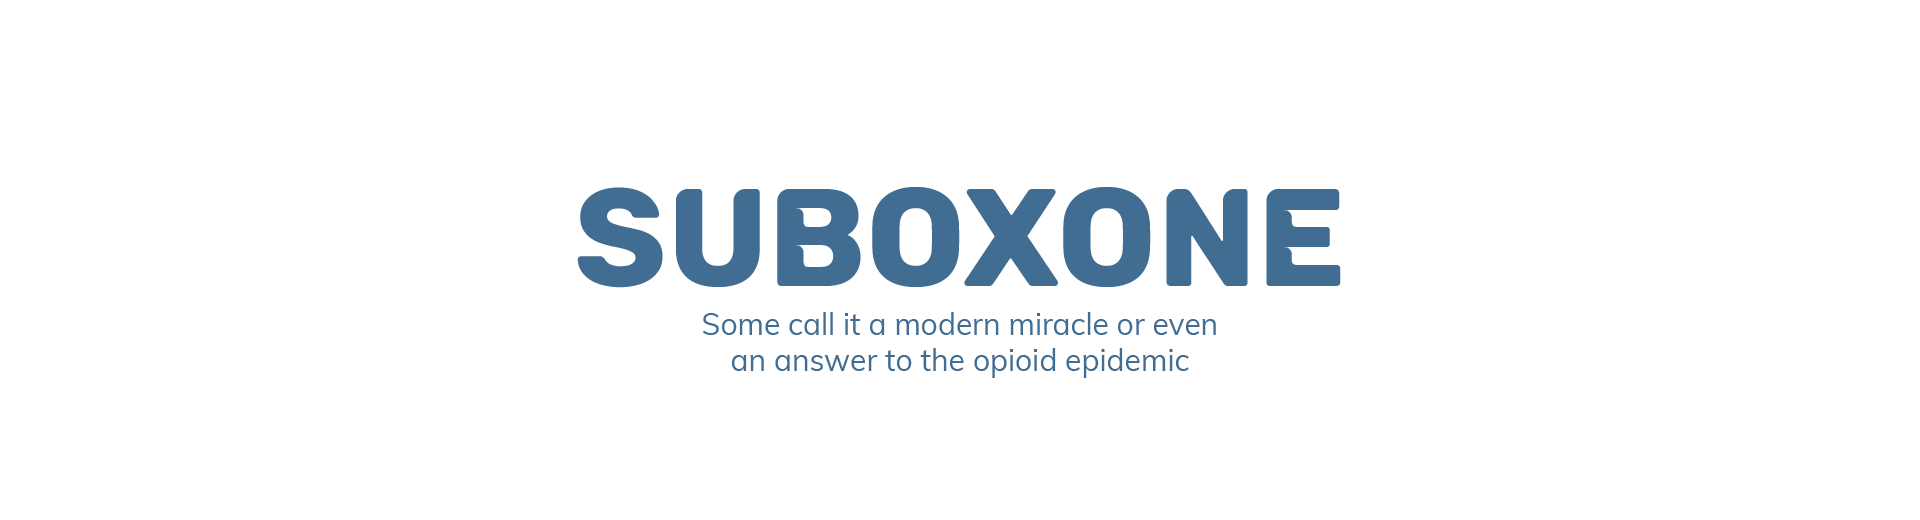 Suboxone A Modern Miracle